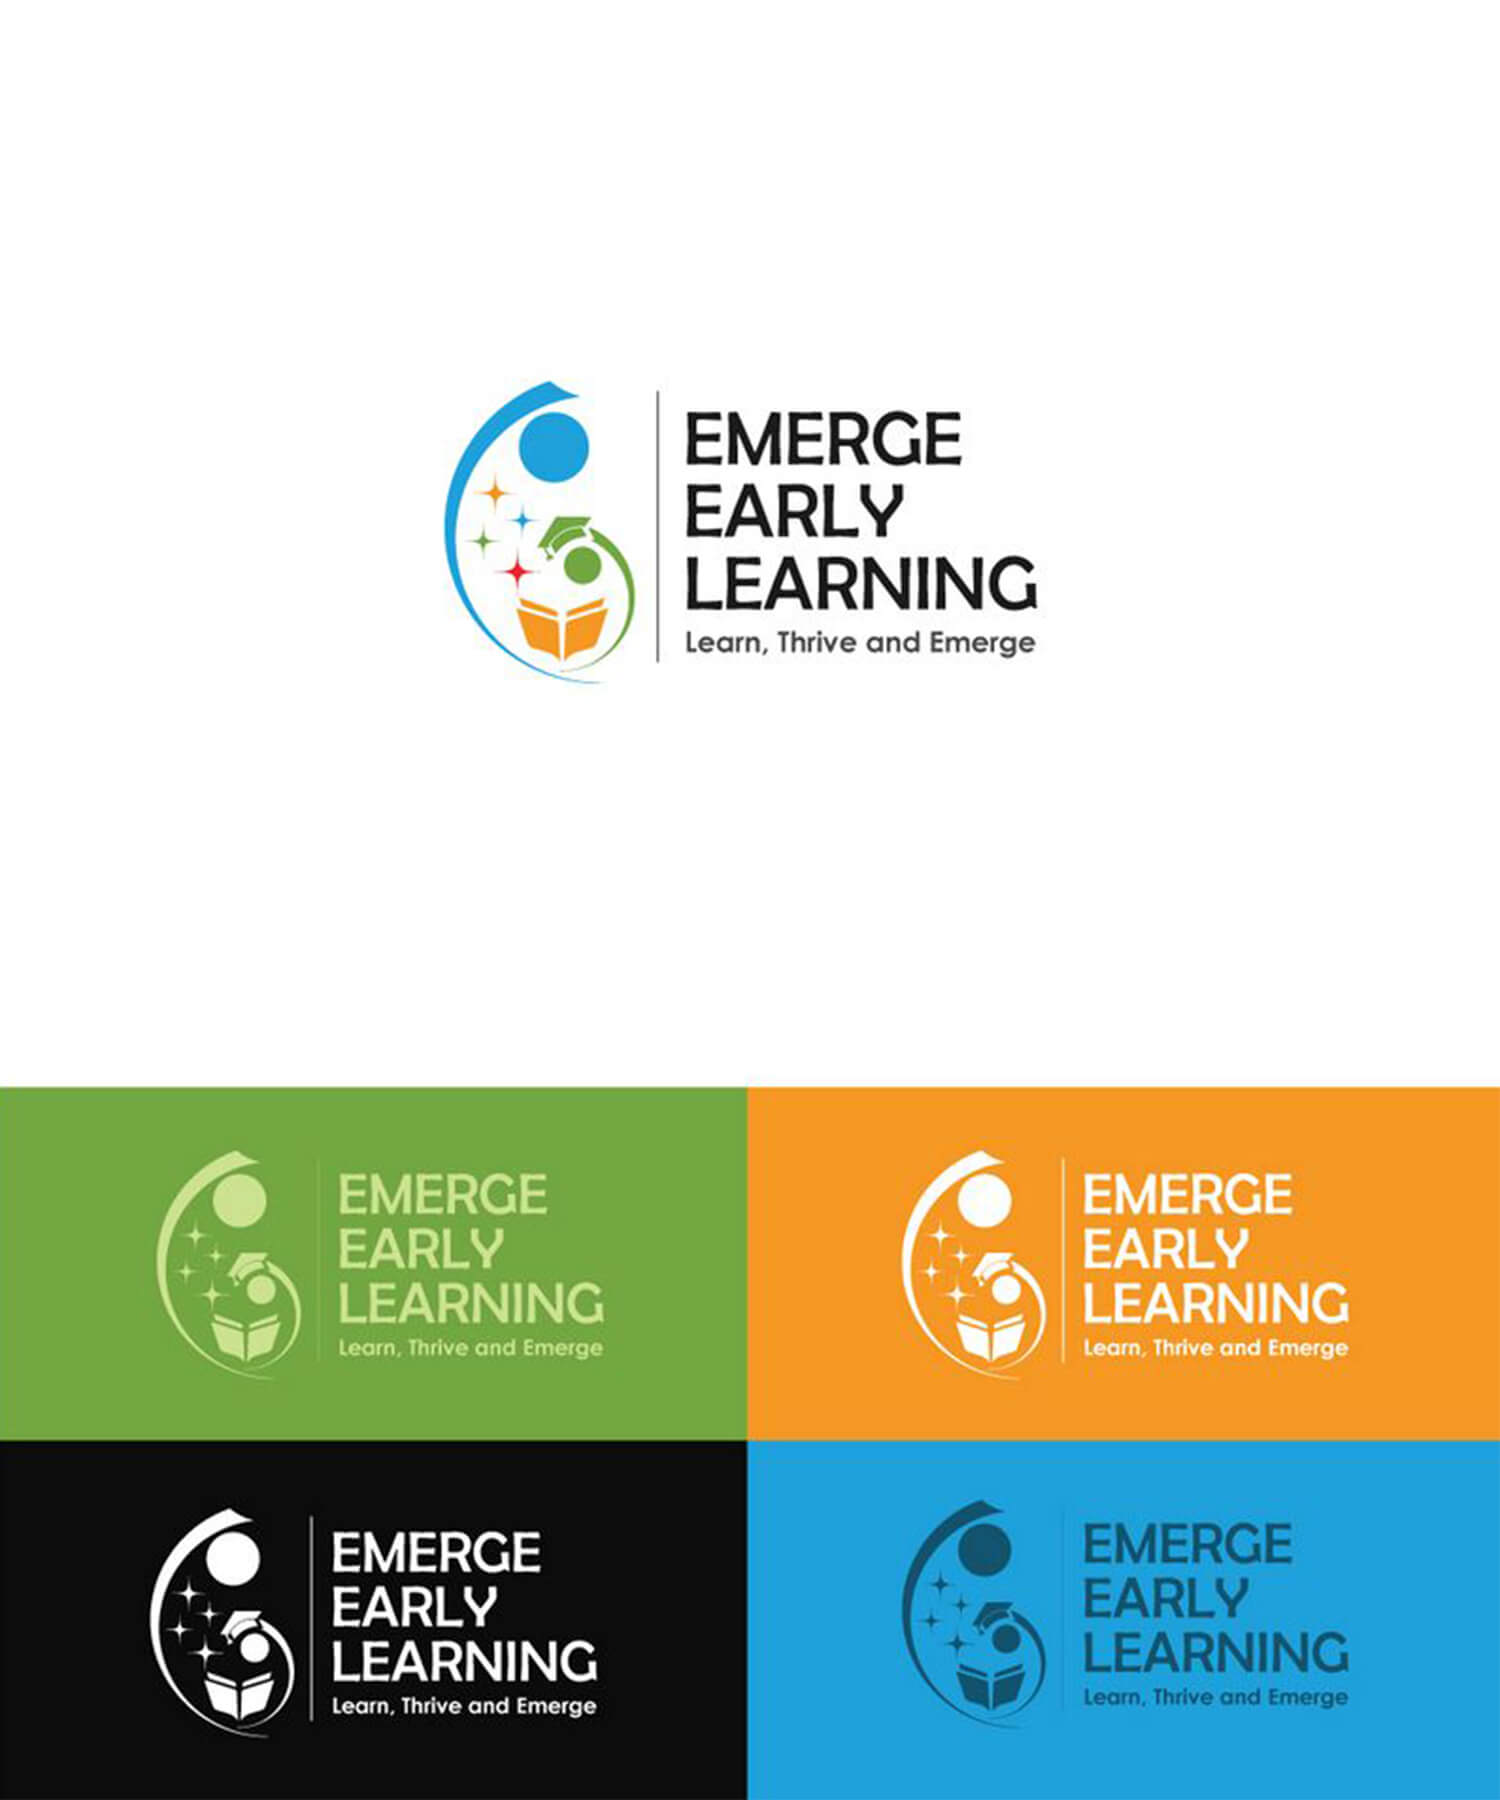 Logo Design for a Training Institute